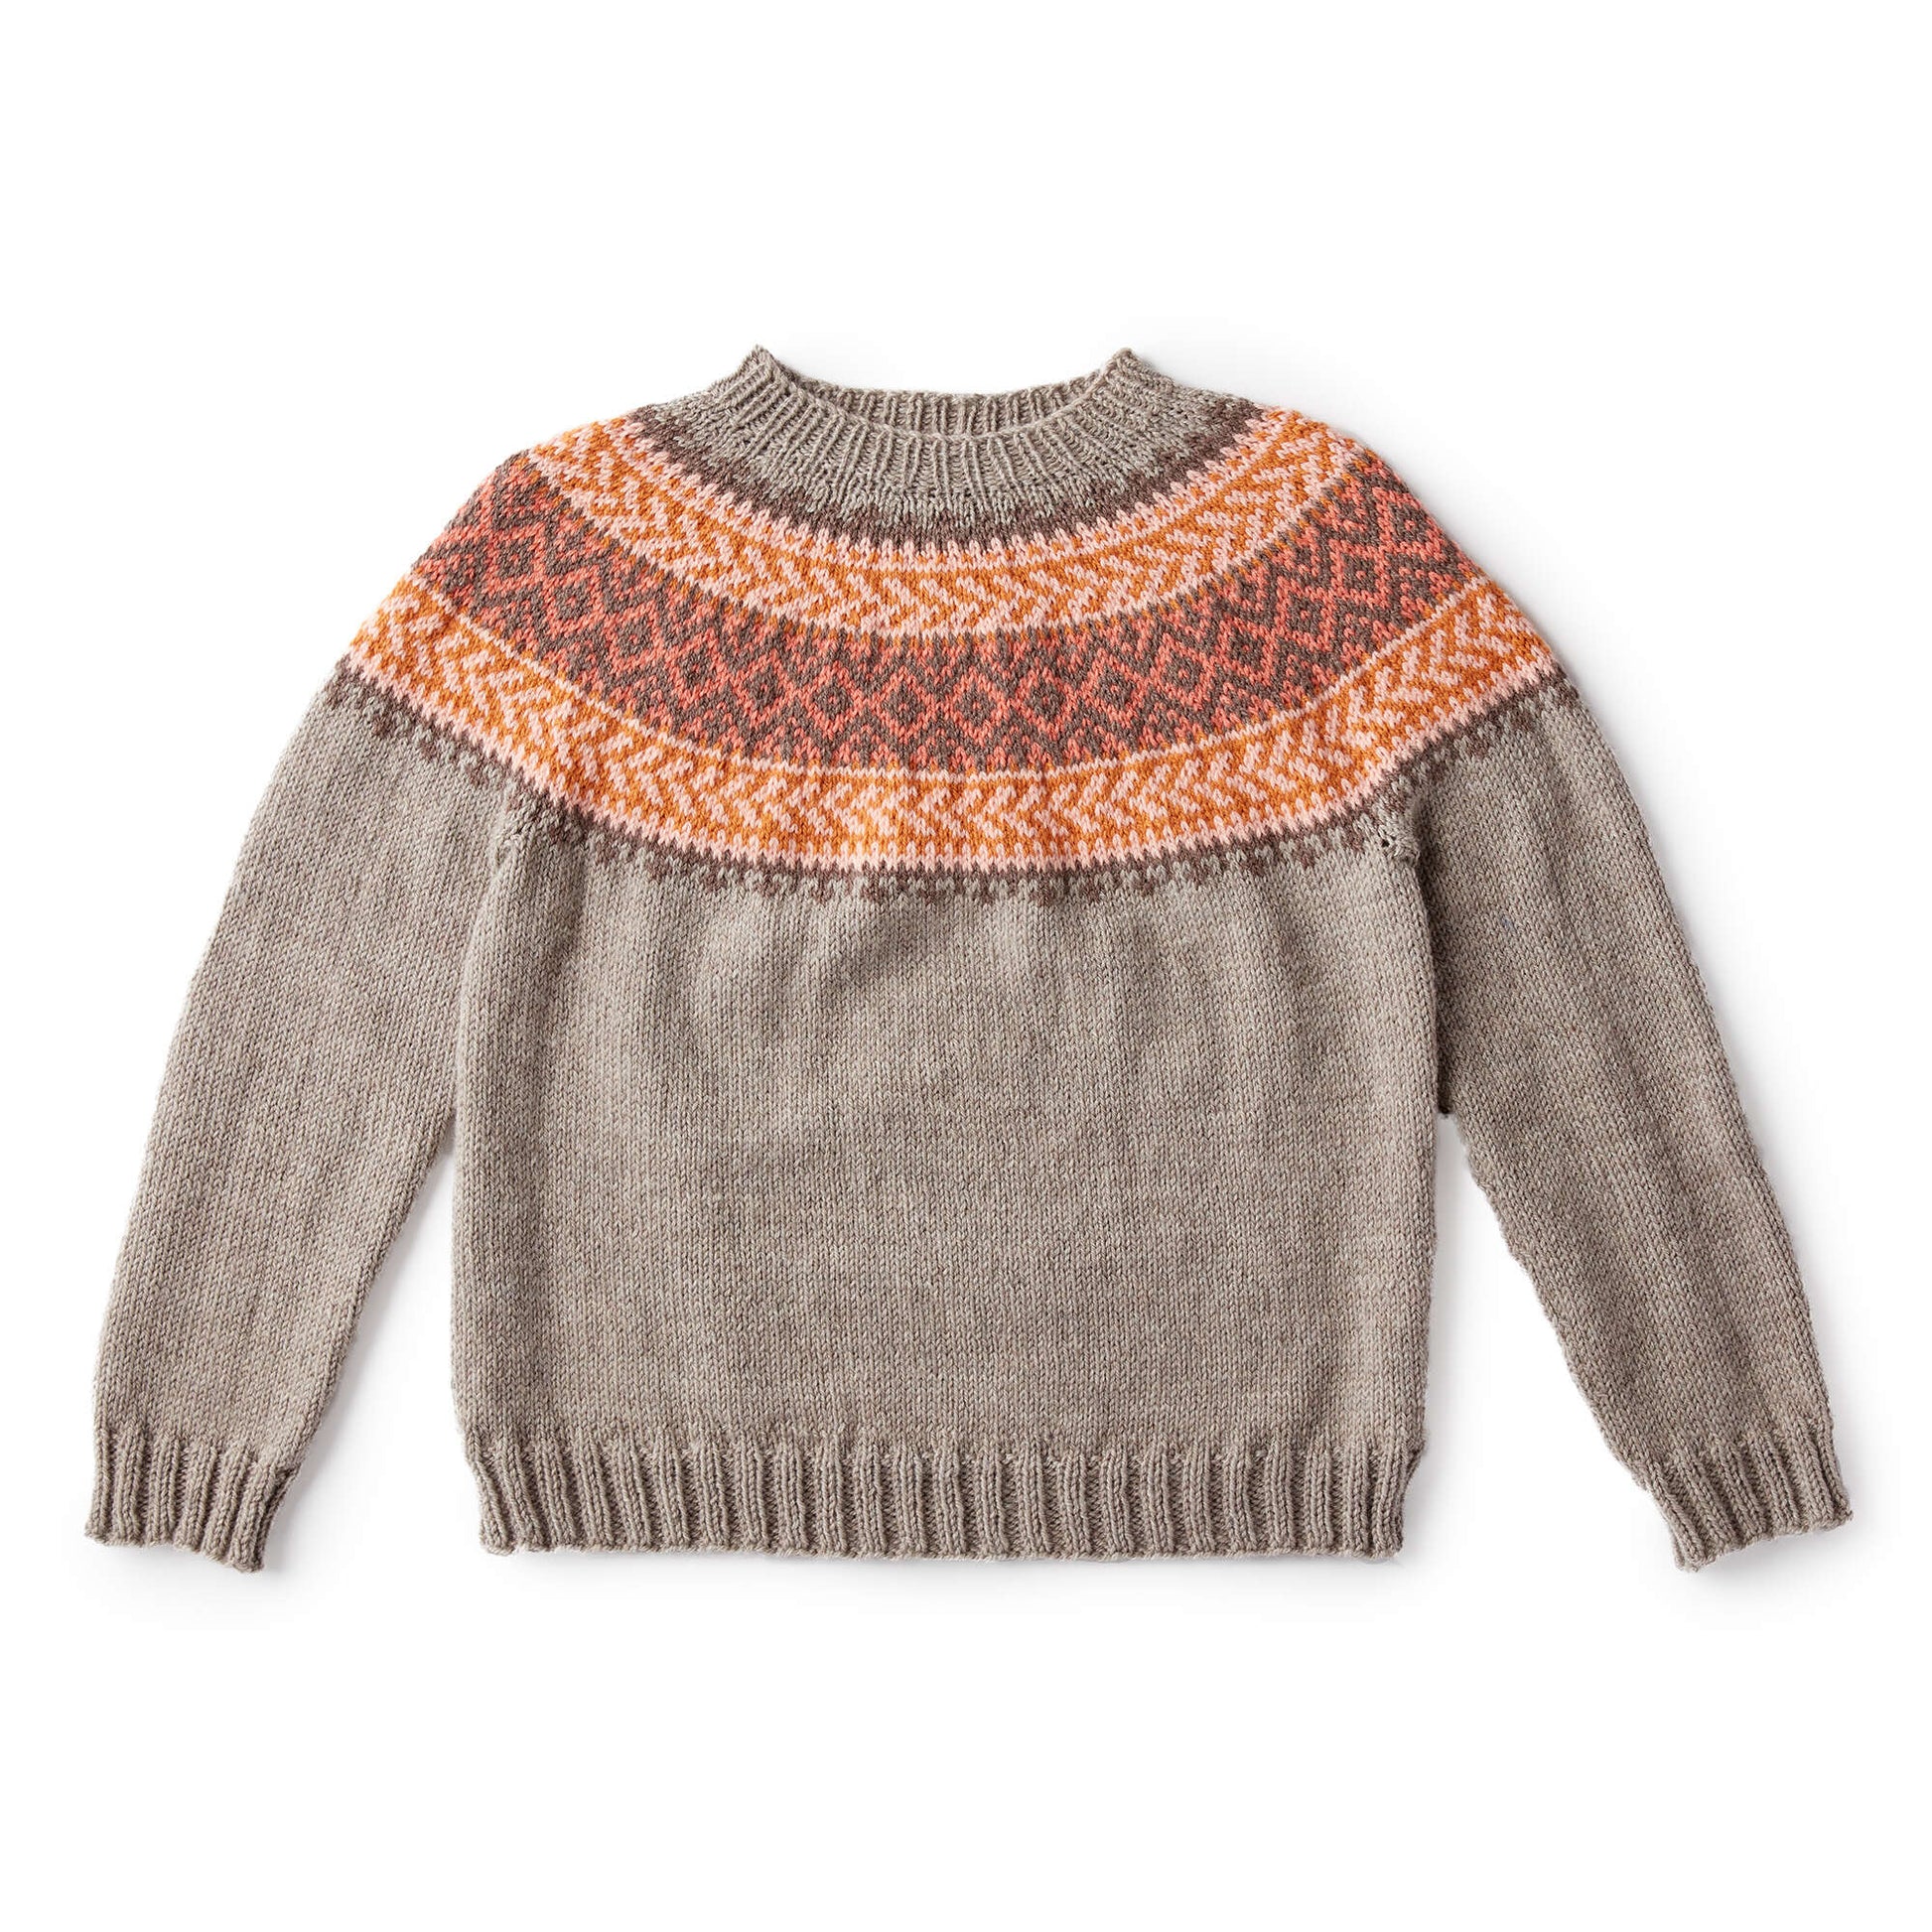 Free Patons Cumberland Knit Yoke Sweater Pattern